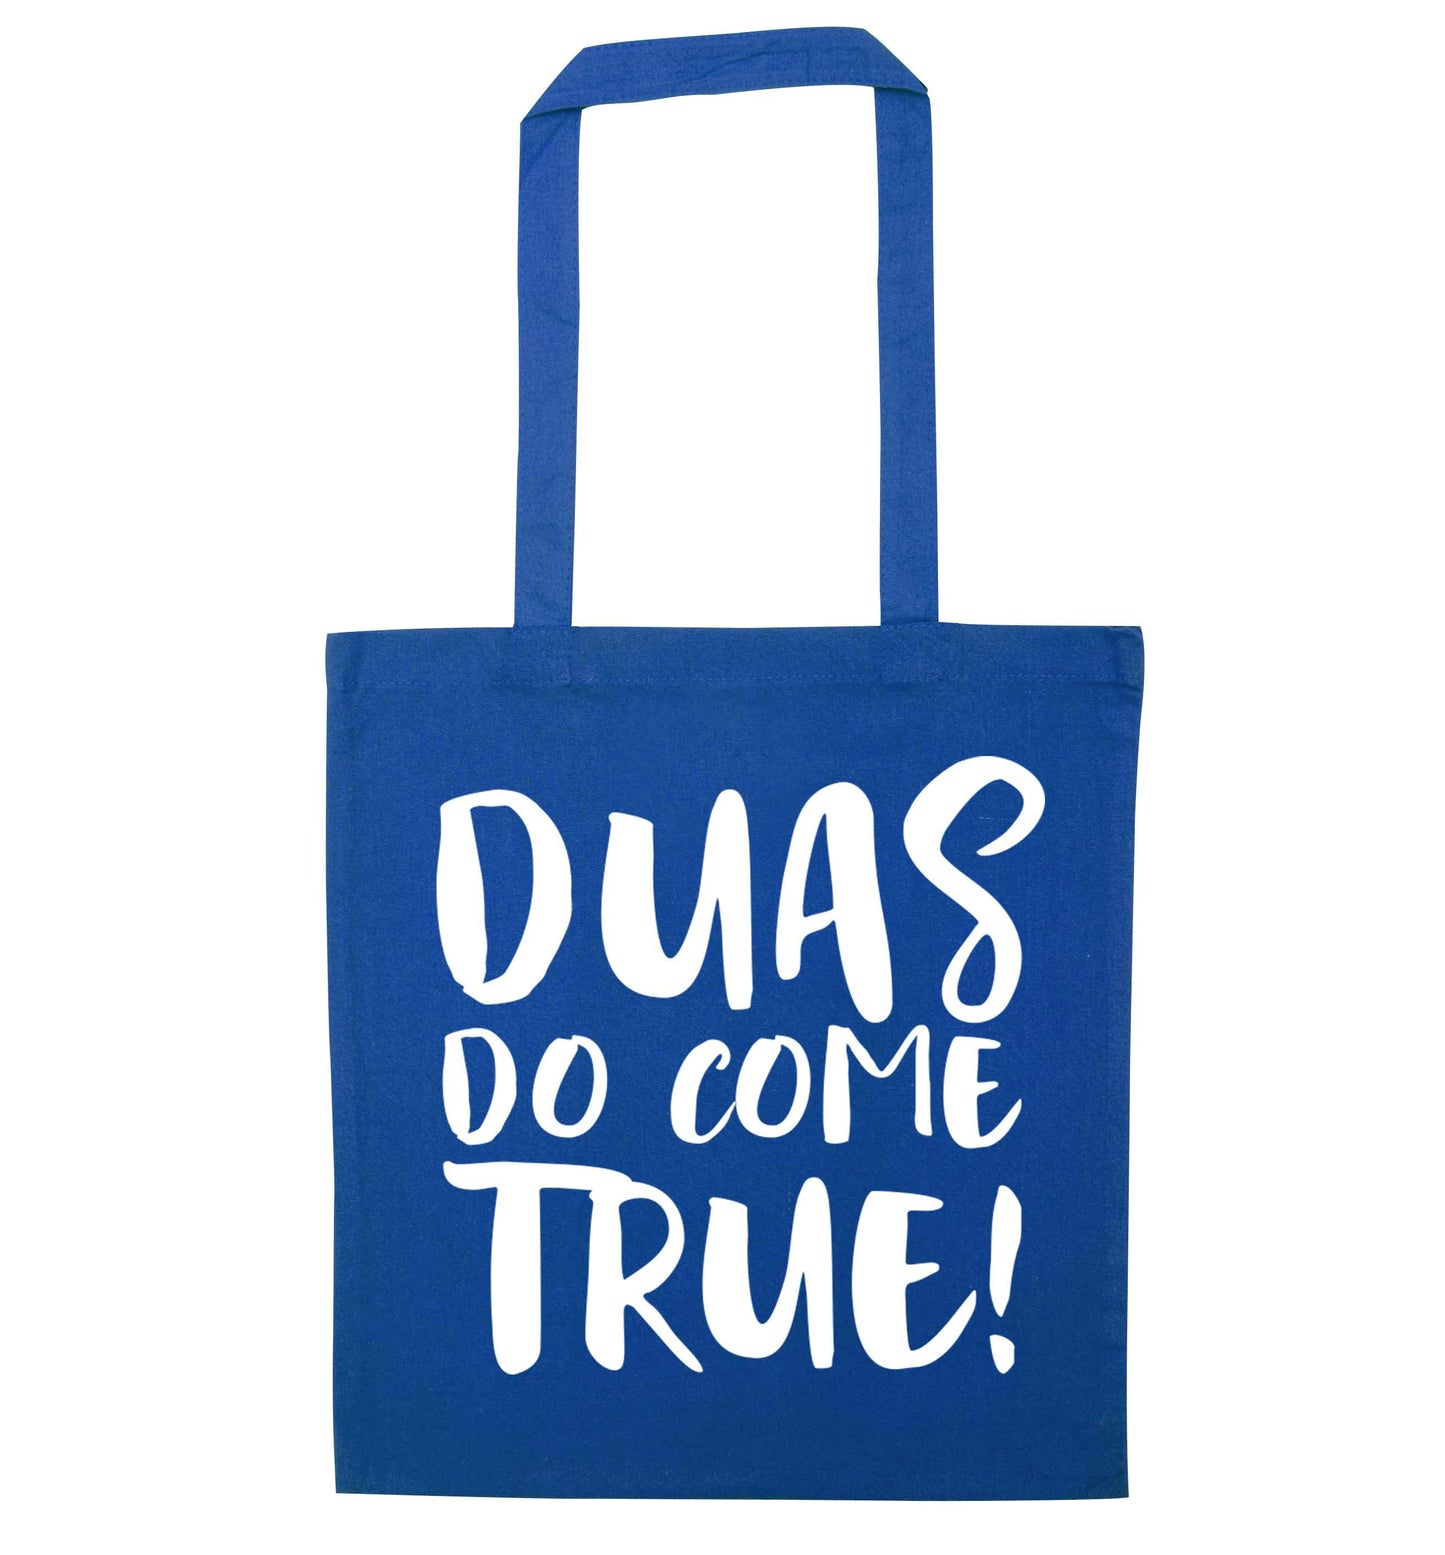 Duas do come true blue tote bag